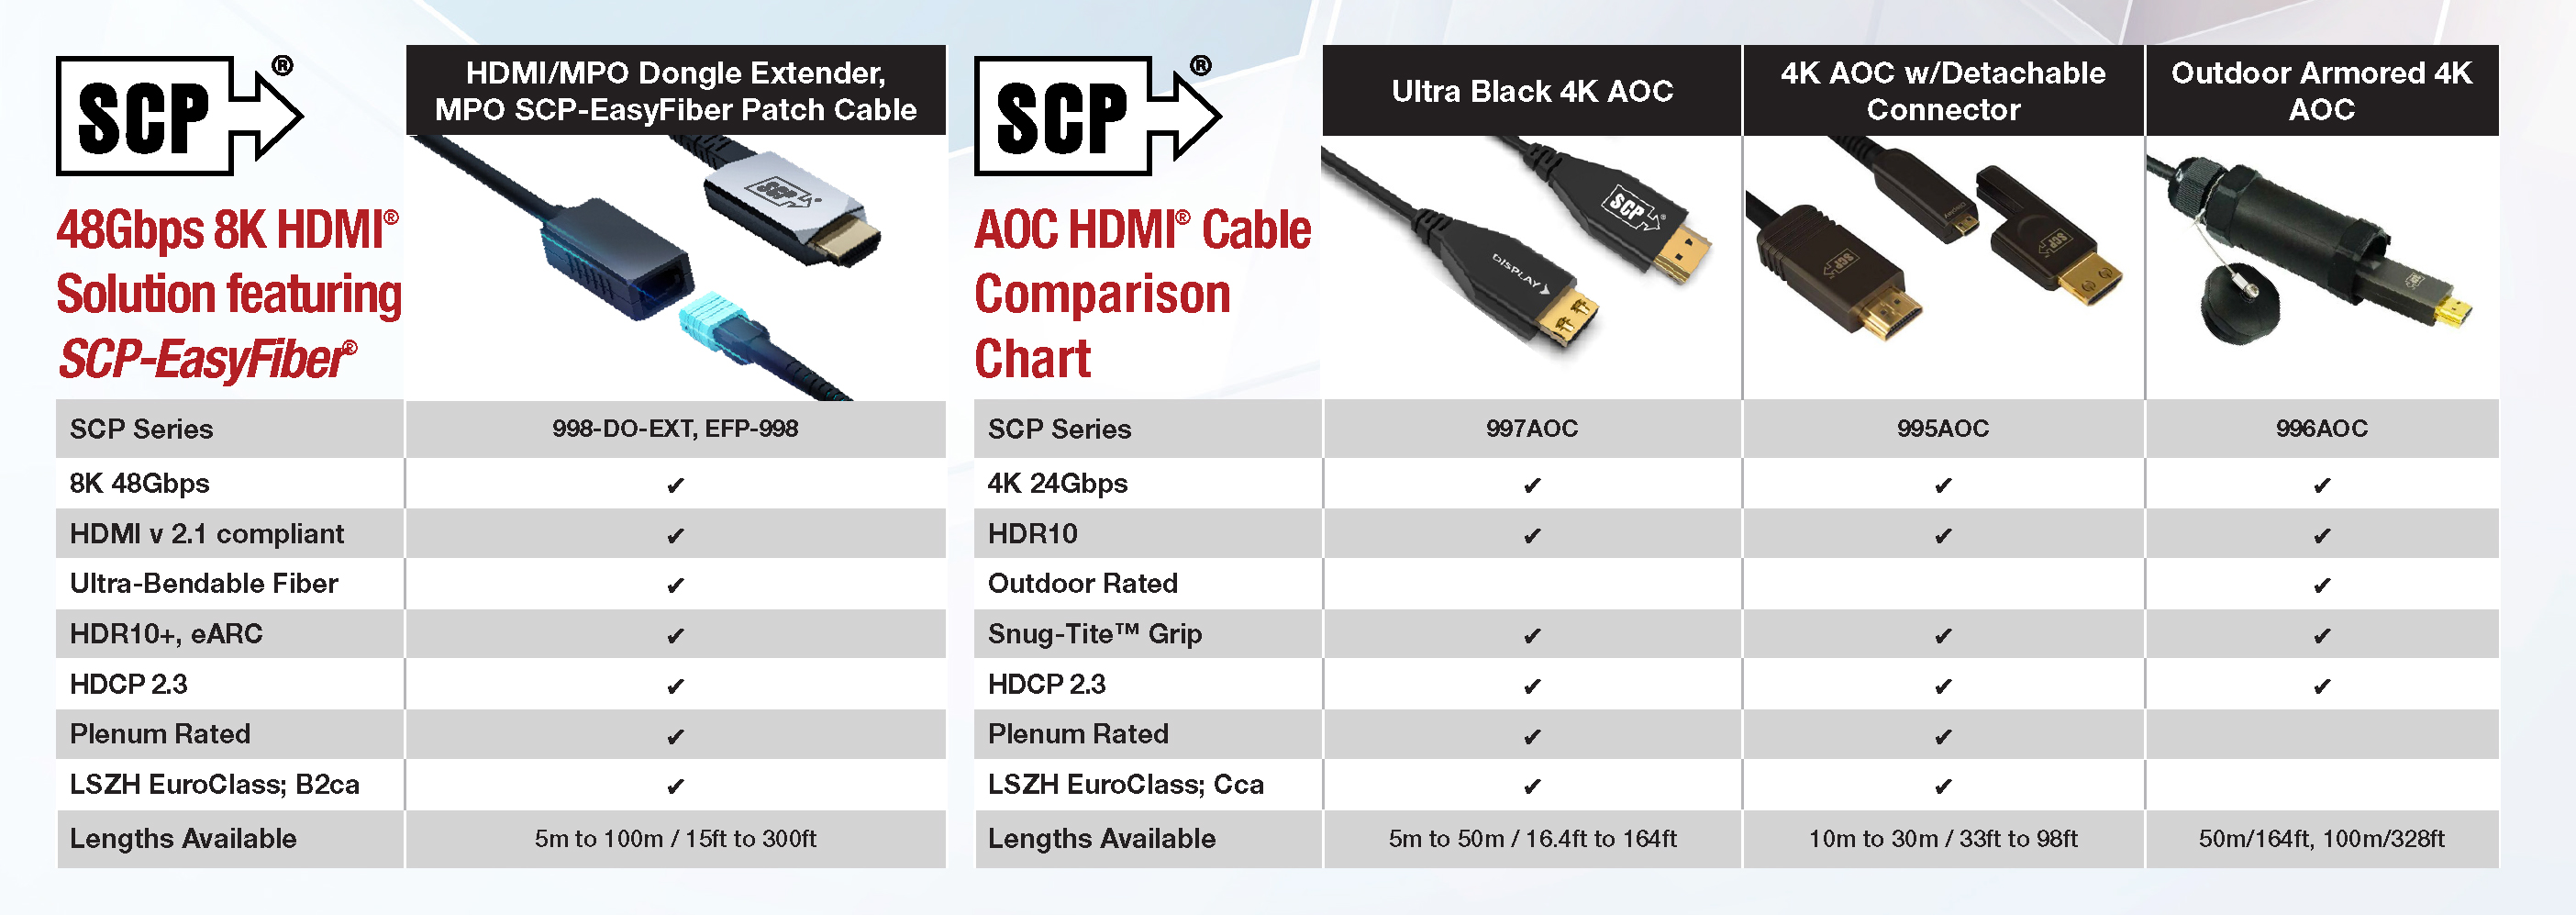 SCP HDMI Cable Comparison Chart